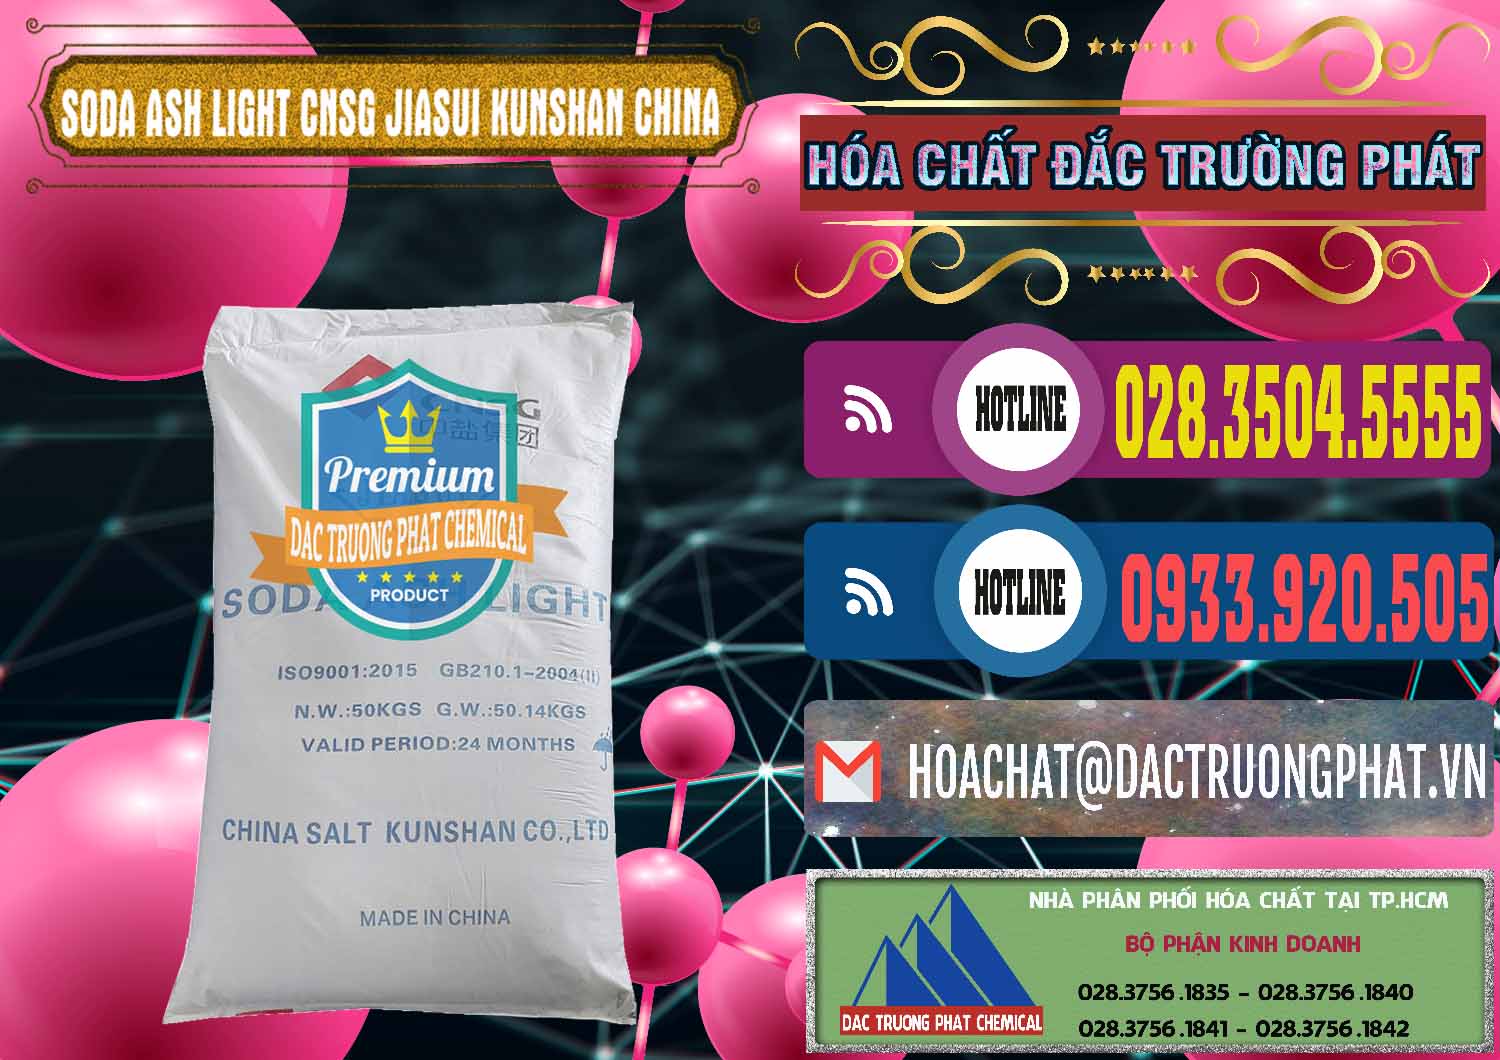 Cty chuyên bán & phân phối Soda Ash Light - NA2CO3 99.2% CNSG Jiasui Kunshan Trung Quốc China - 0252 - Chuyên phân phối & bán hóa chất tại TP.HCM - muabanhoachat.com.vn